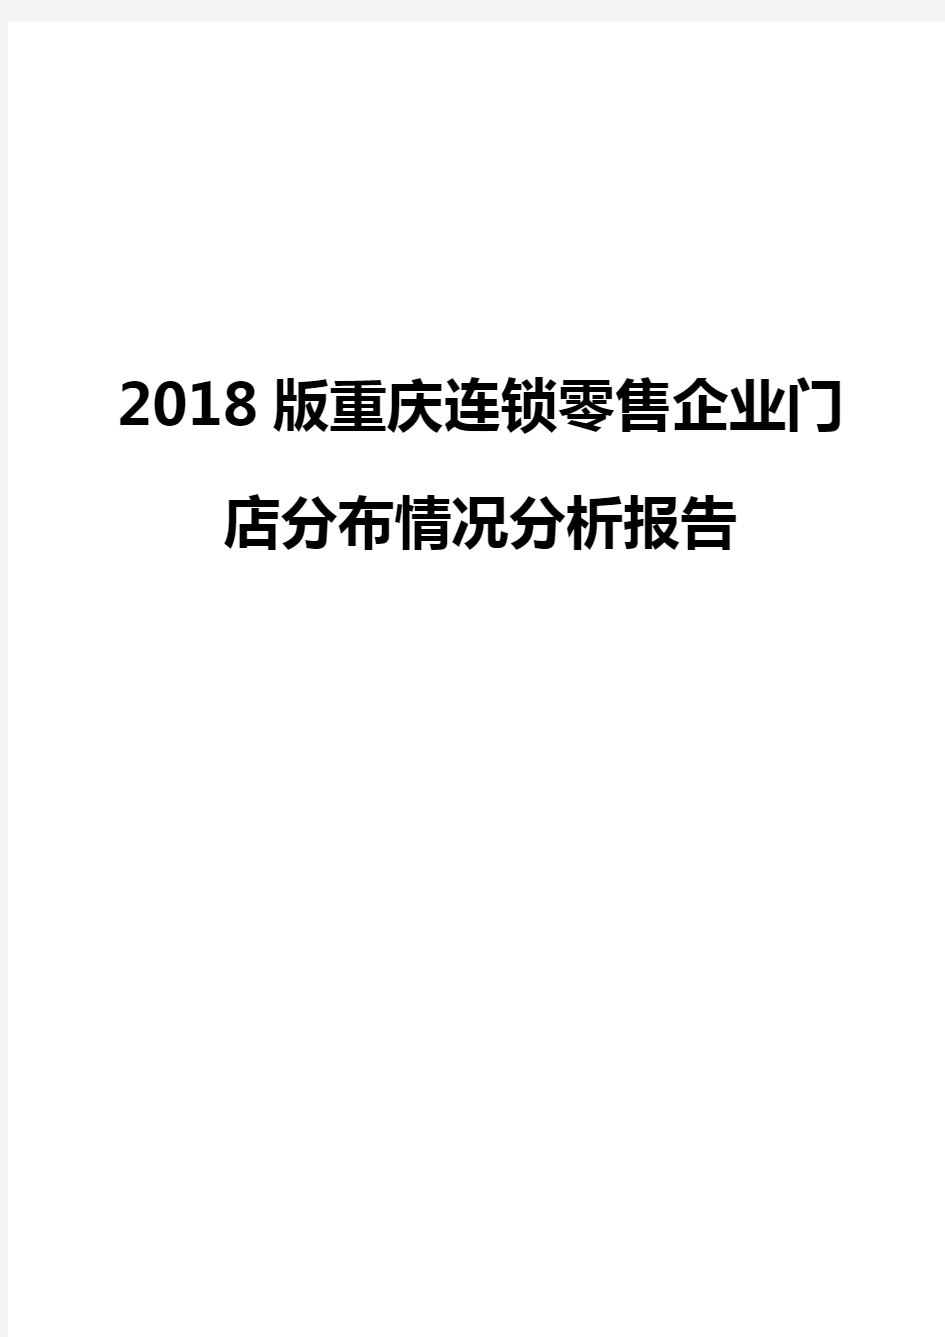 2018版重庆连锁零售企业门店分布情况分析报告